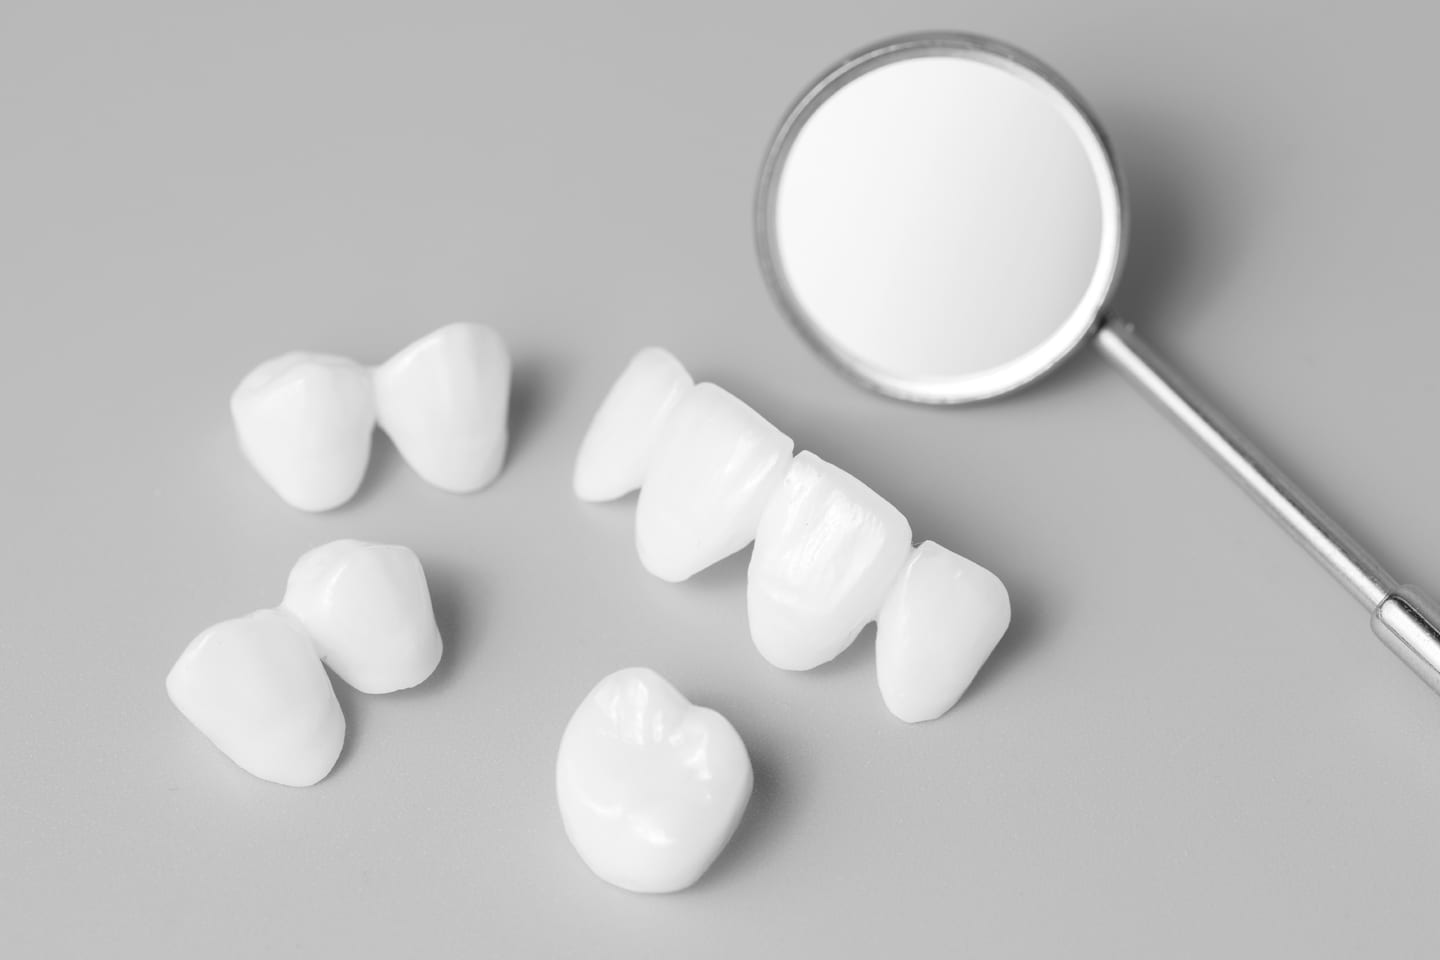 veneers for teeth dental health in chattanooga